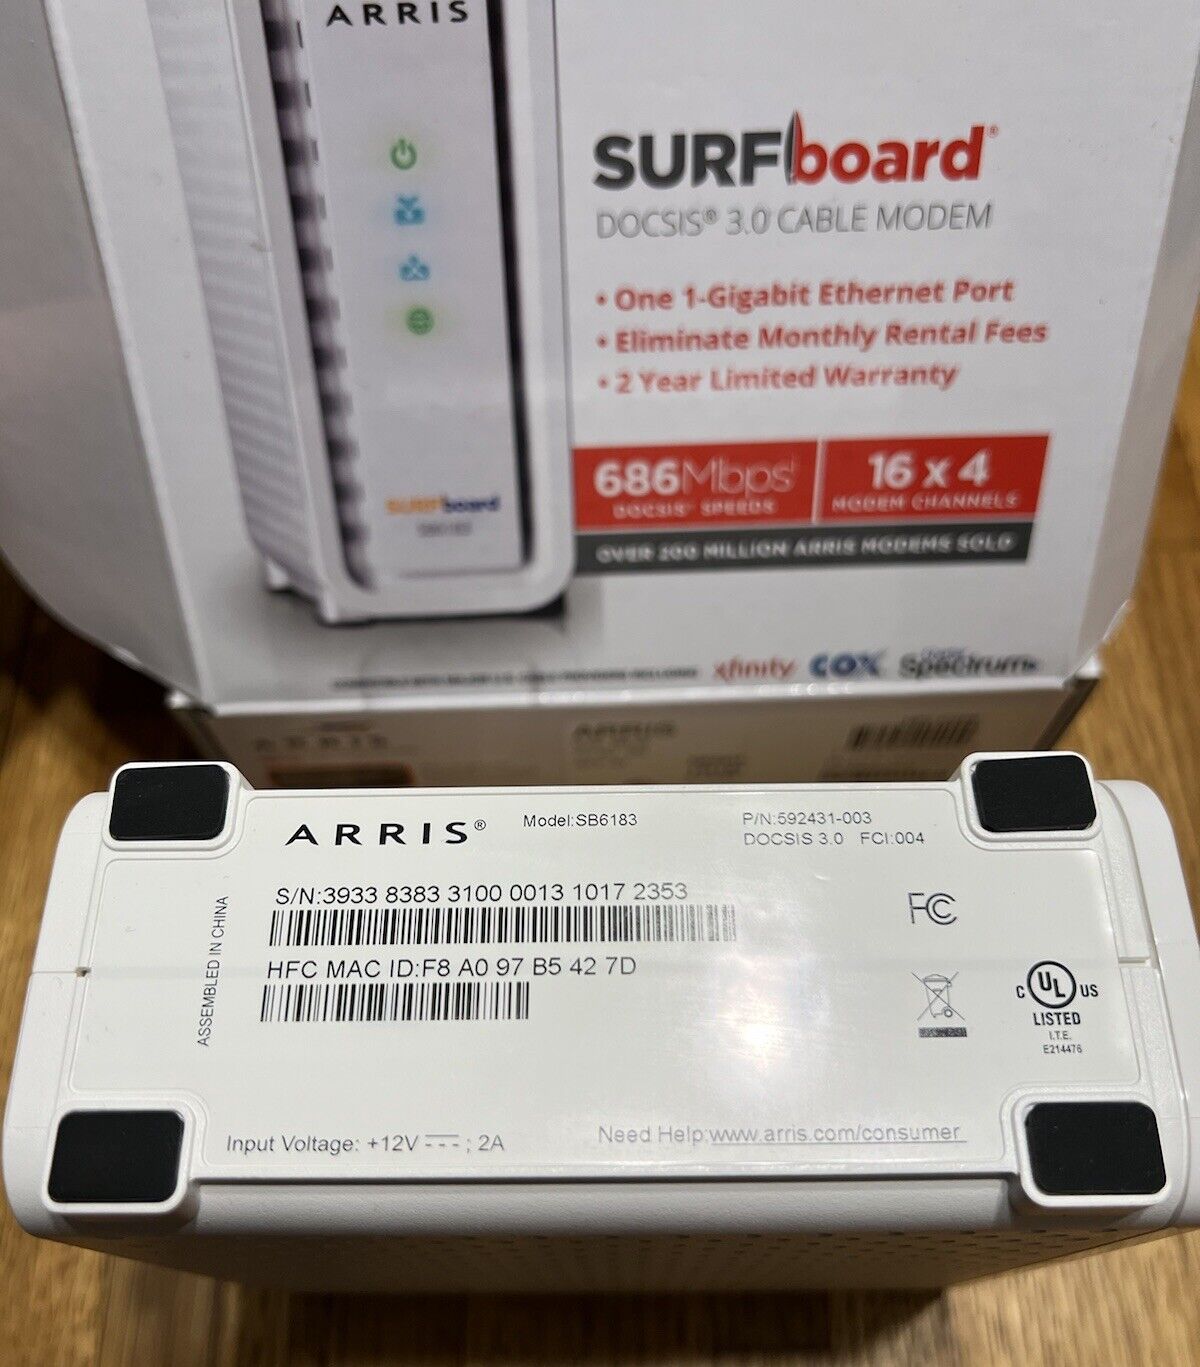  ARRIS SURFboard SB6183 Cable Modem 16x4 Channels DOCSIS 3.0 - white